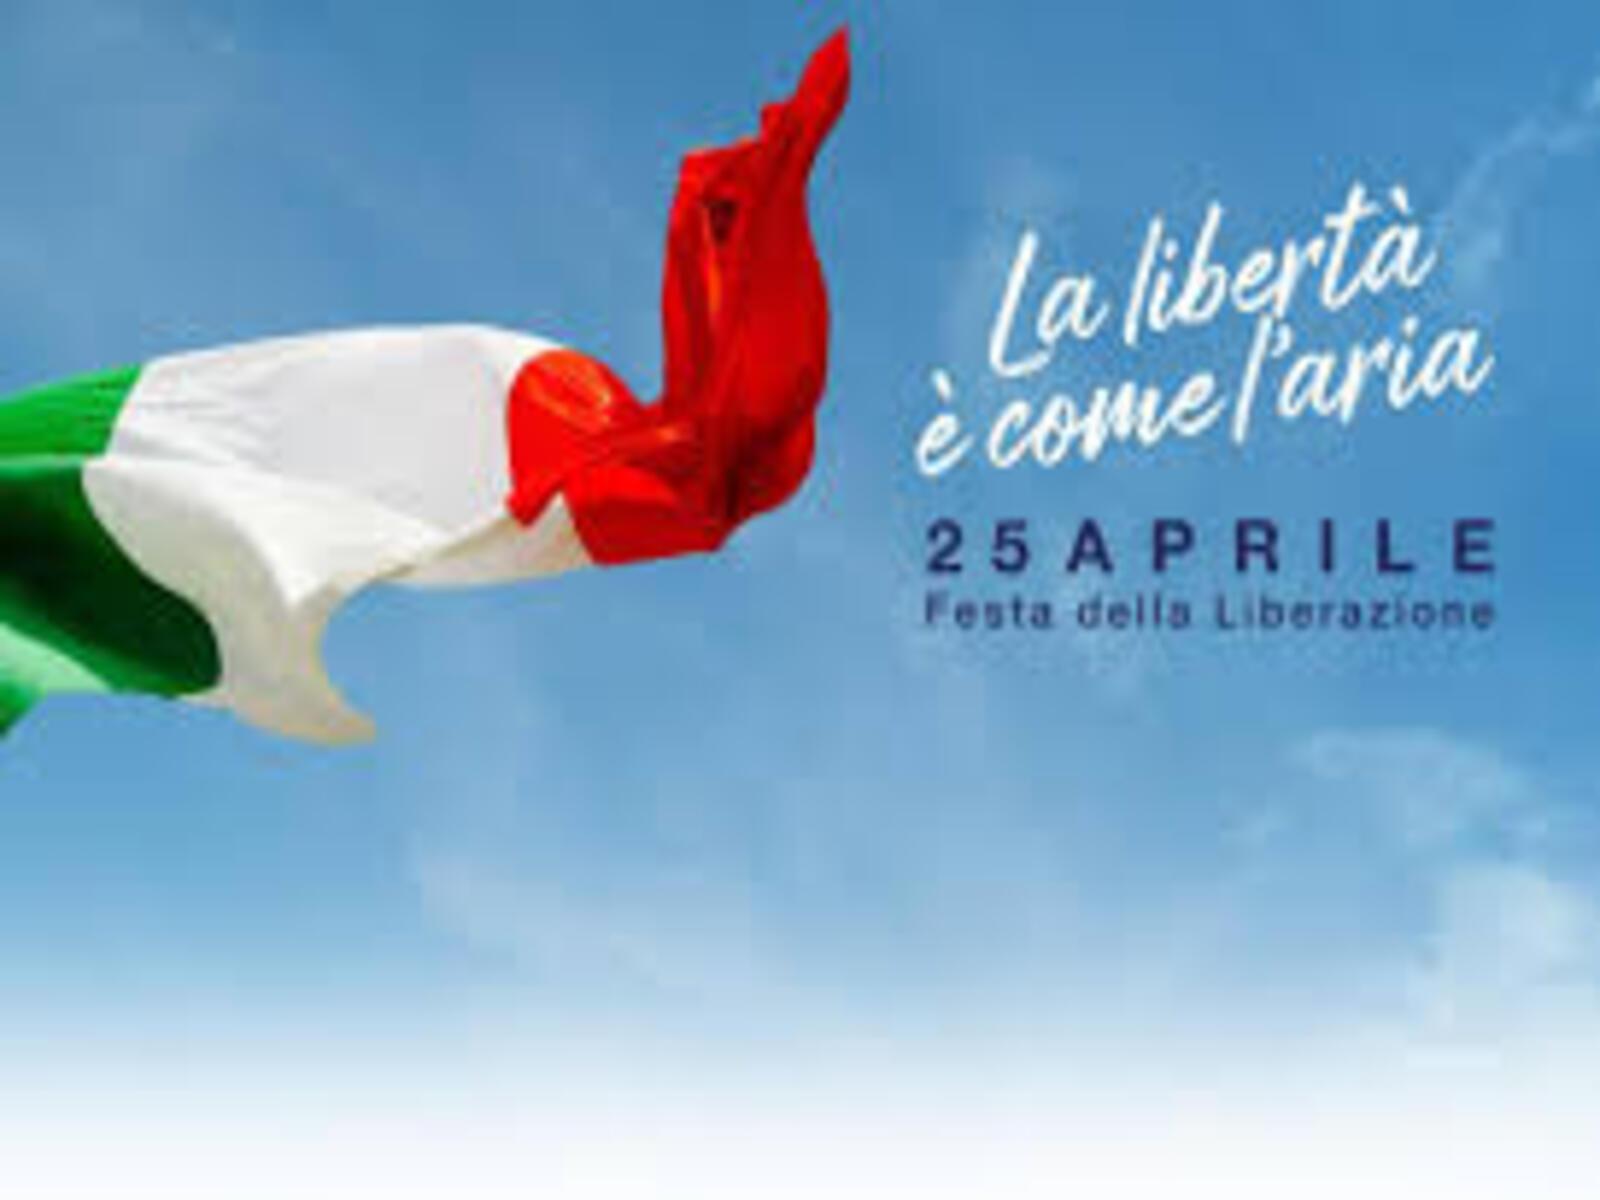 Anniversario della Liberazione d'Italia 